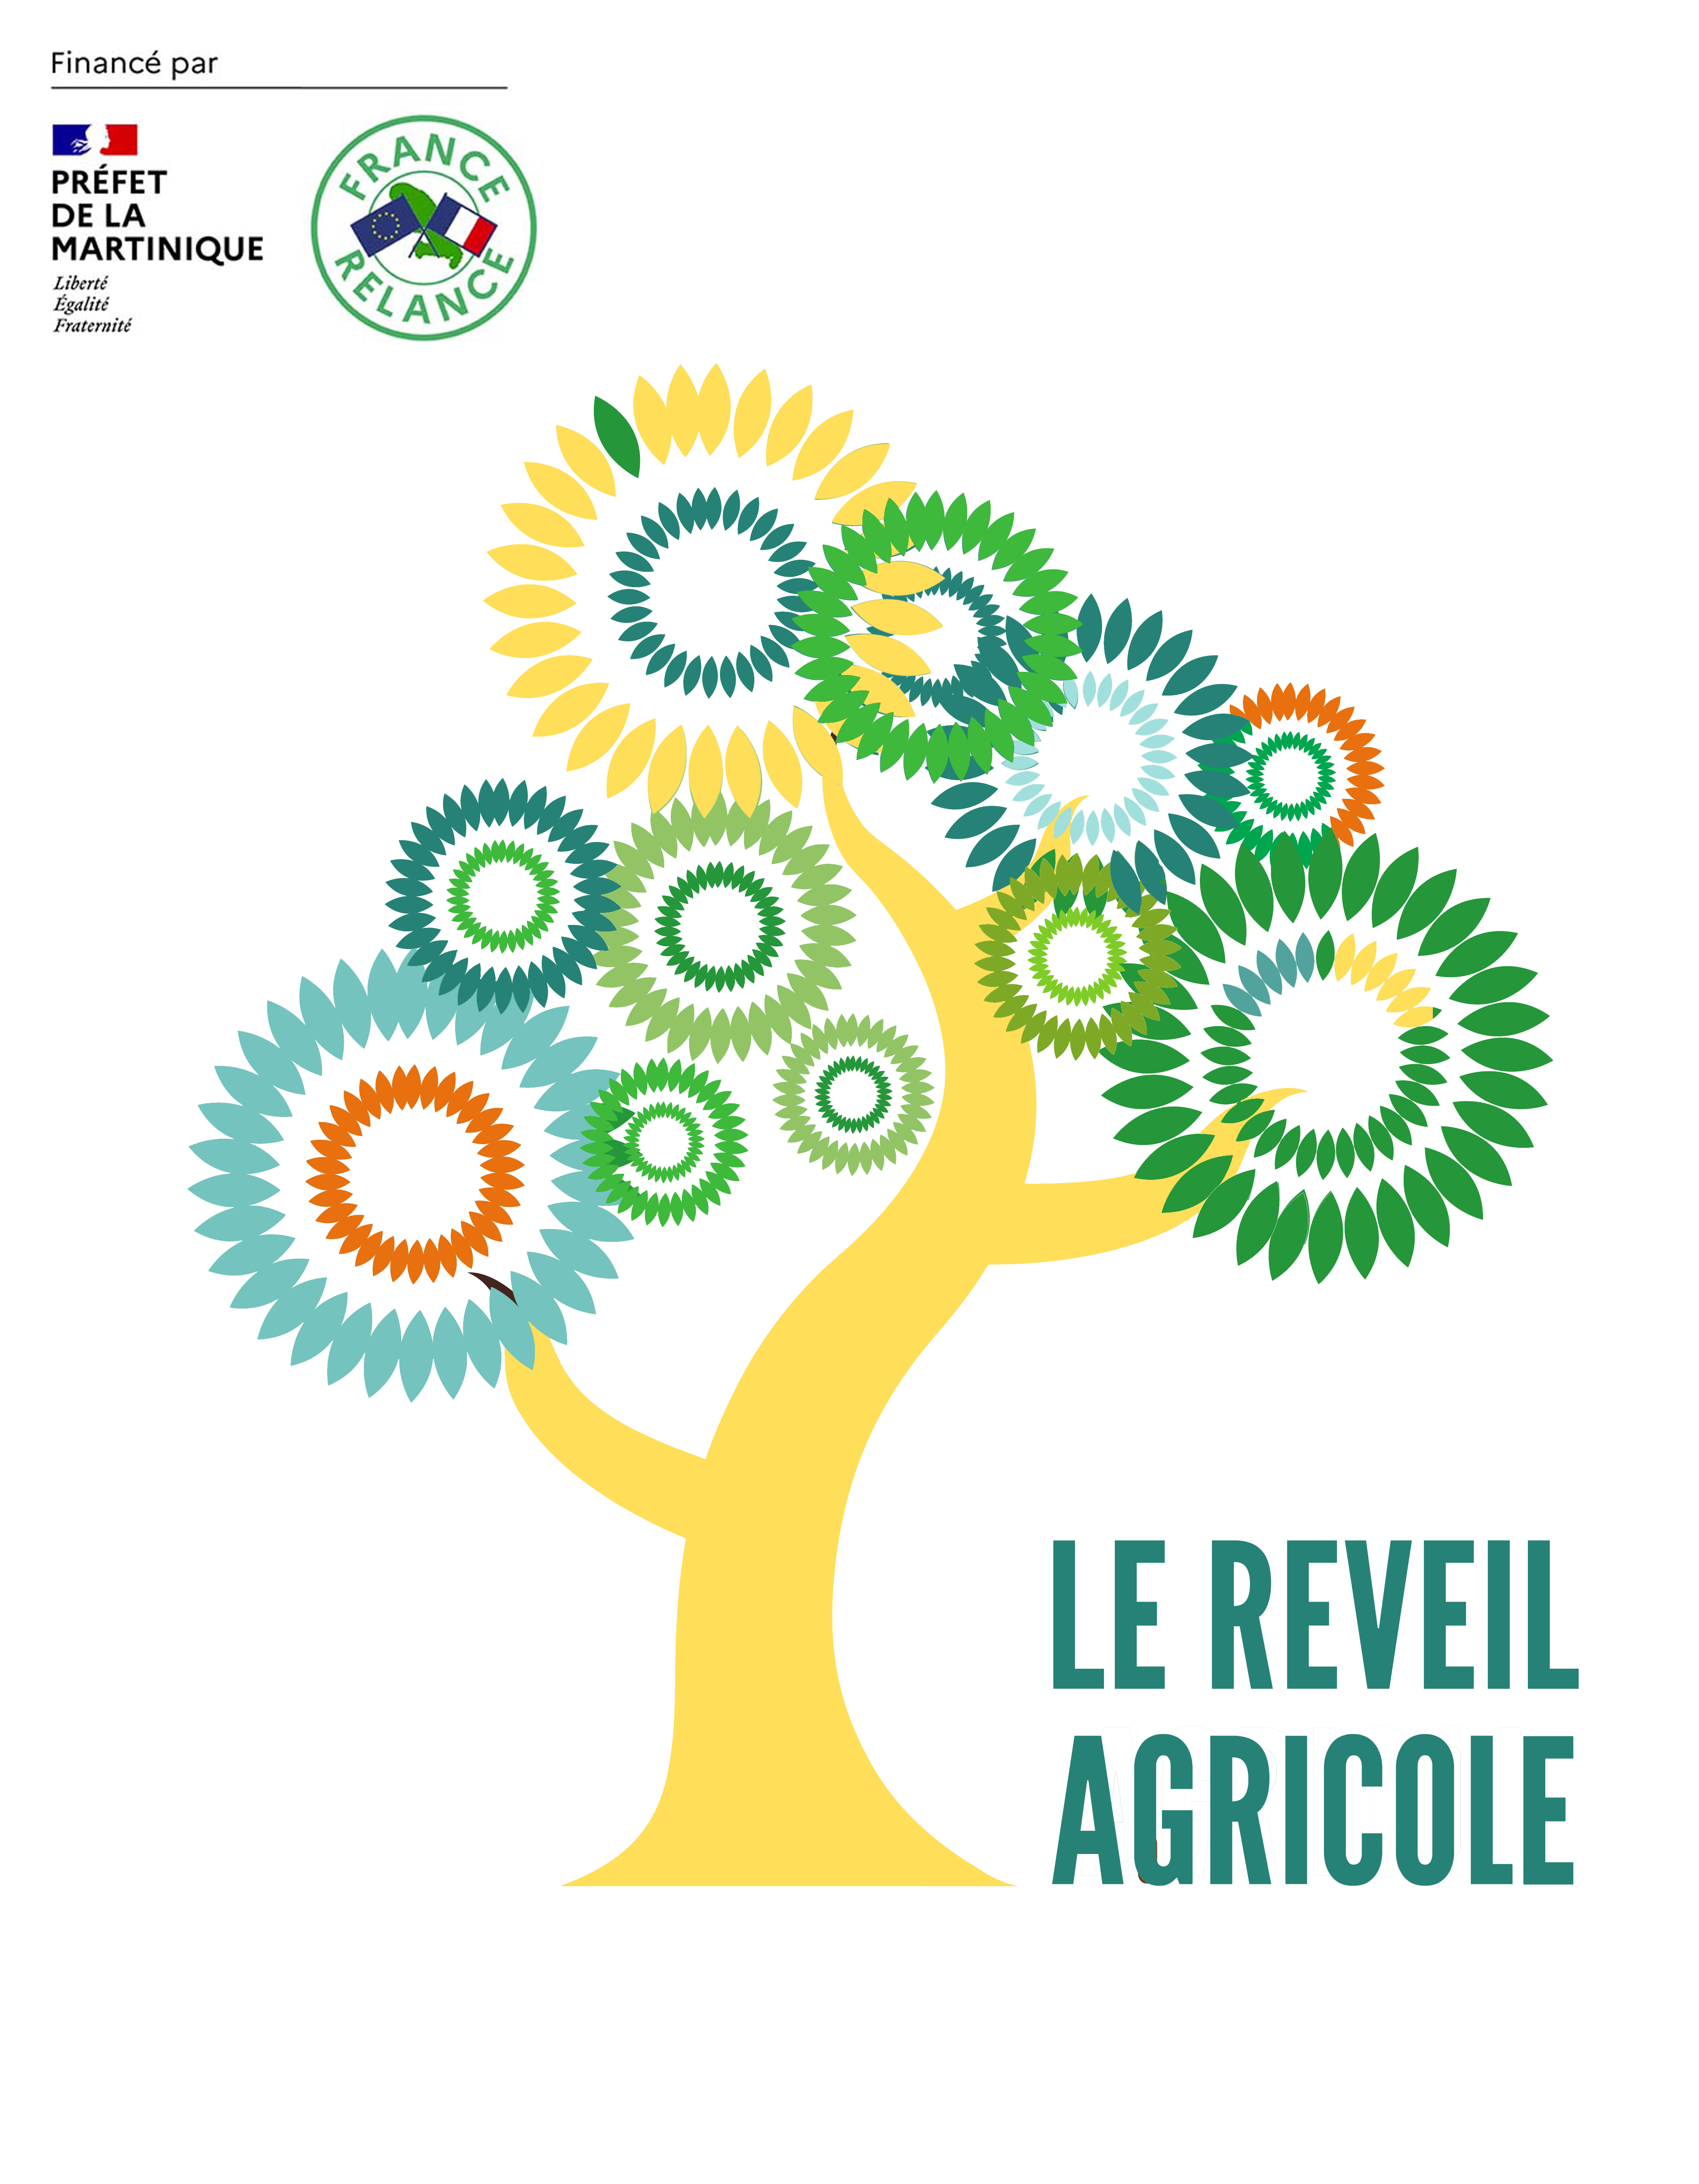 LOGO-Le-Reveil-Agricole-FOND-BLANC.png